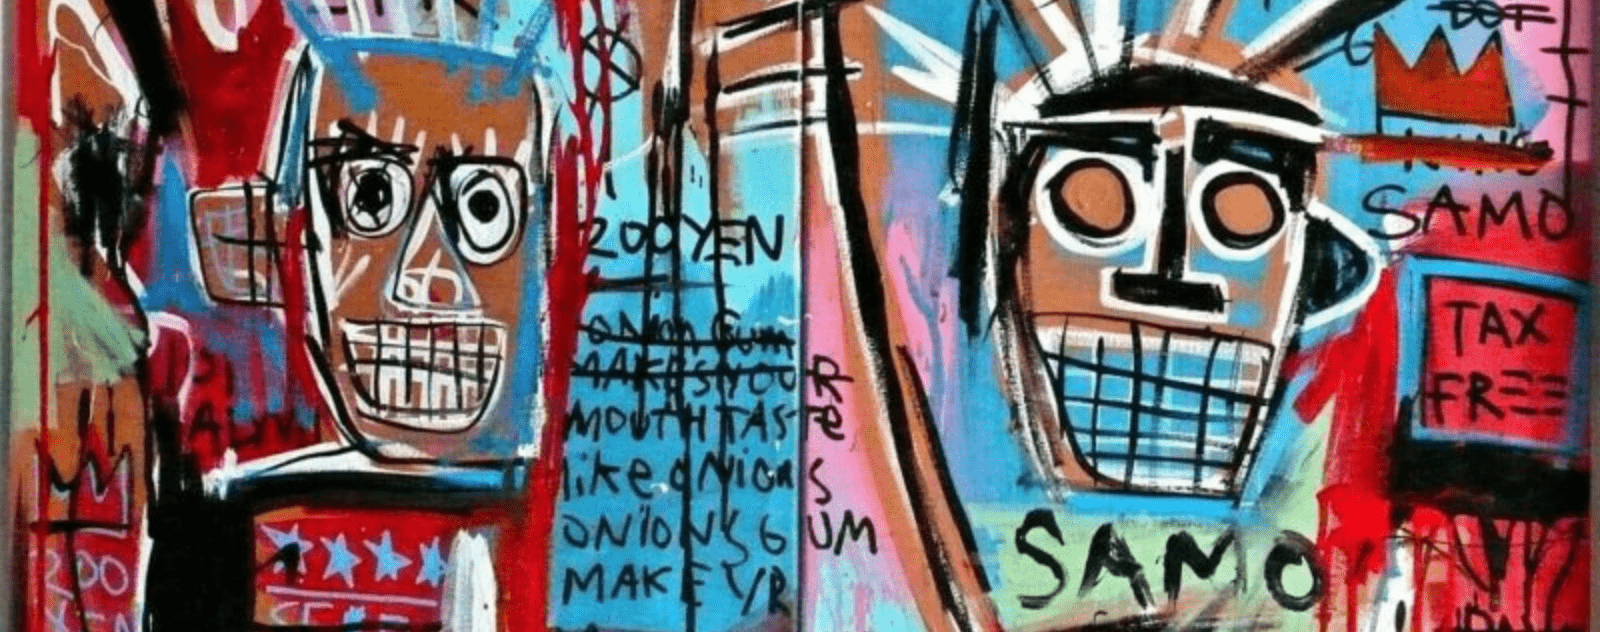 Oeuvre de Jean Michel Basquiat